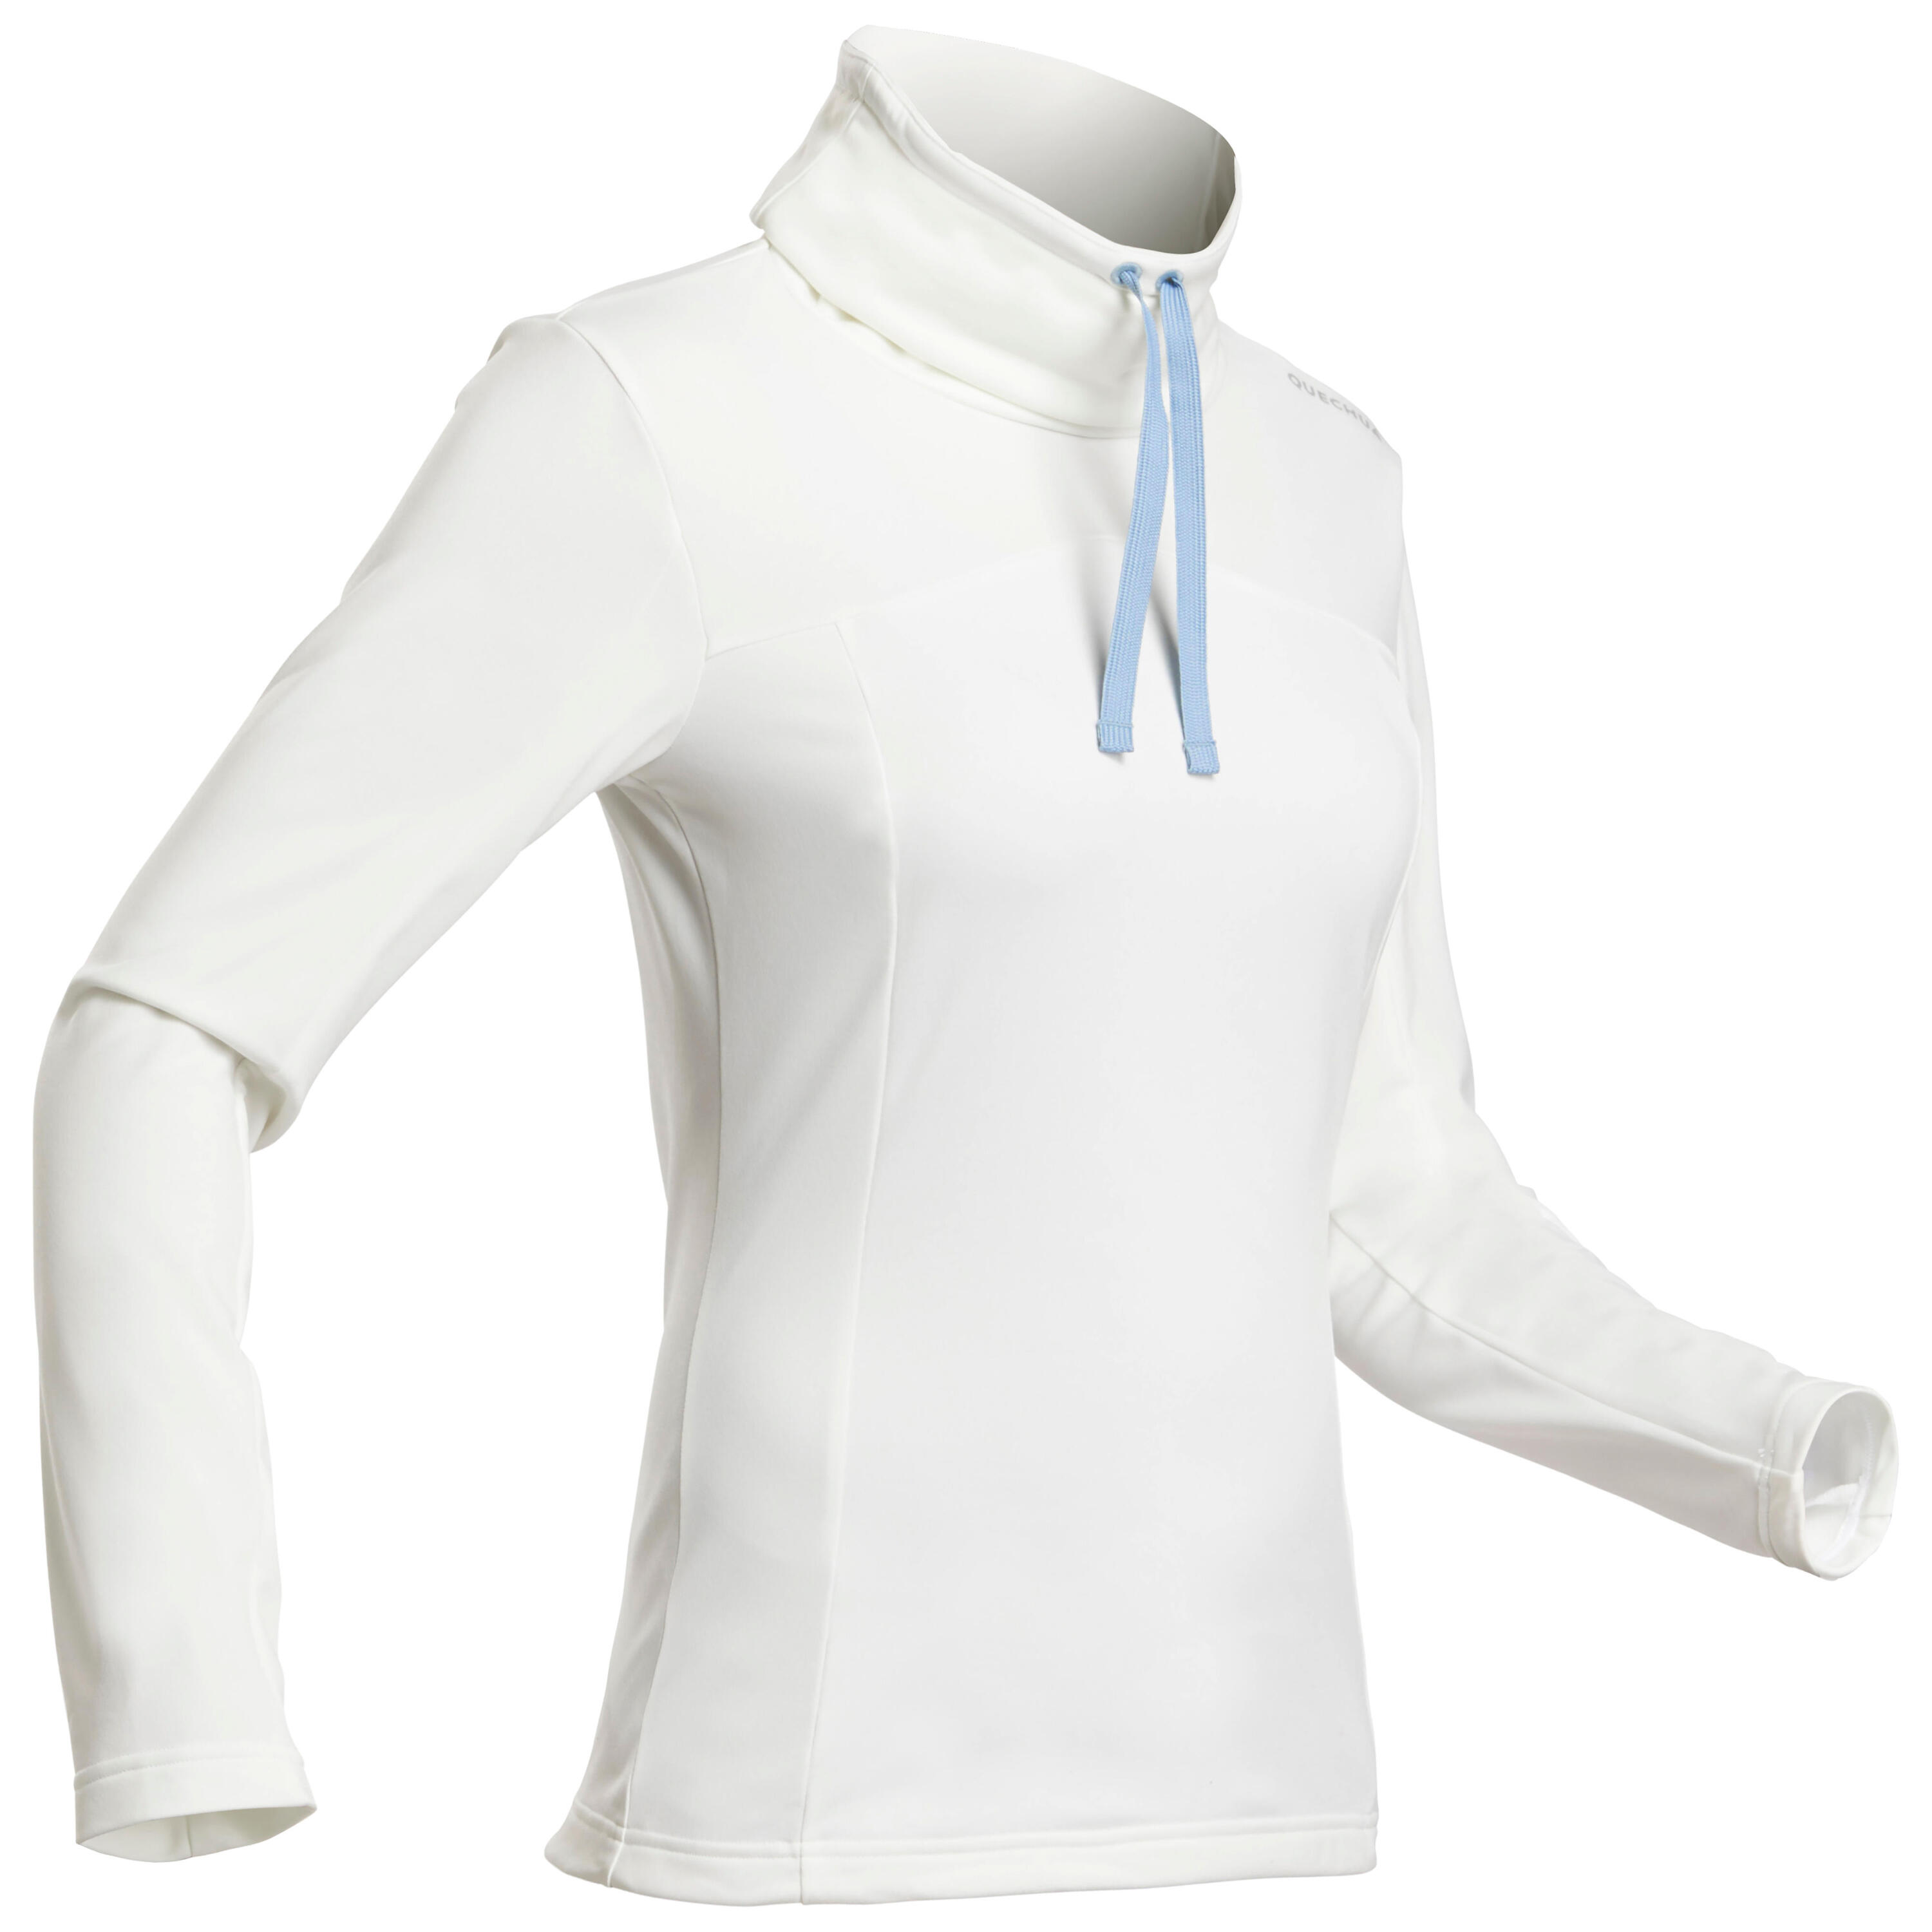 Women’s Long-sleeved Warm Hiking T-shirt - SH100 WARM 1/4